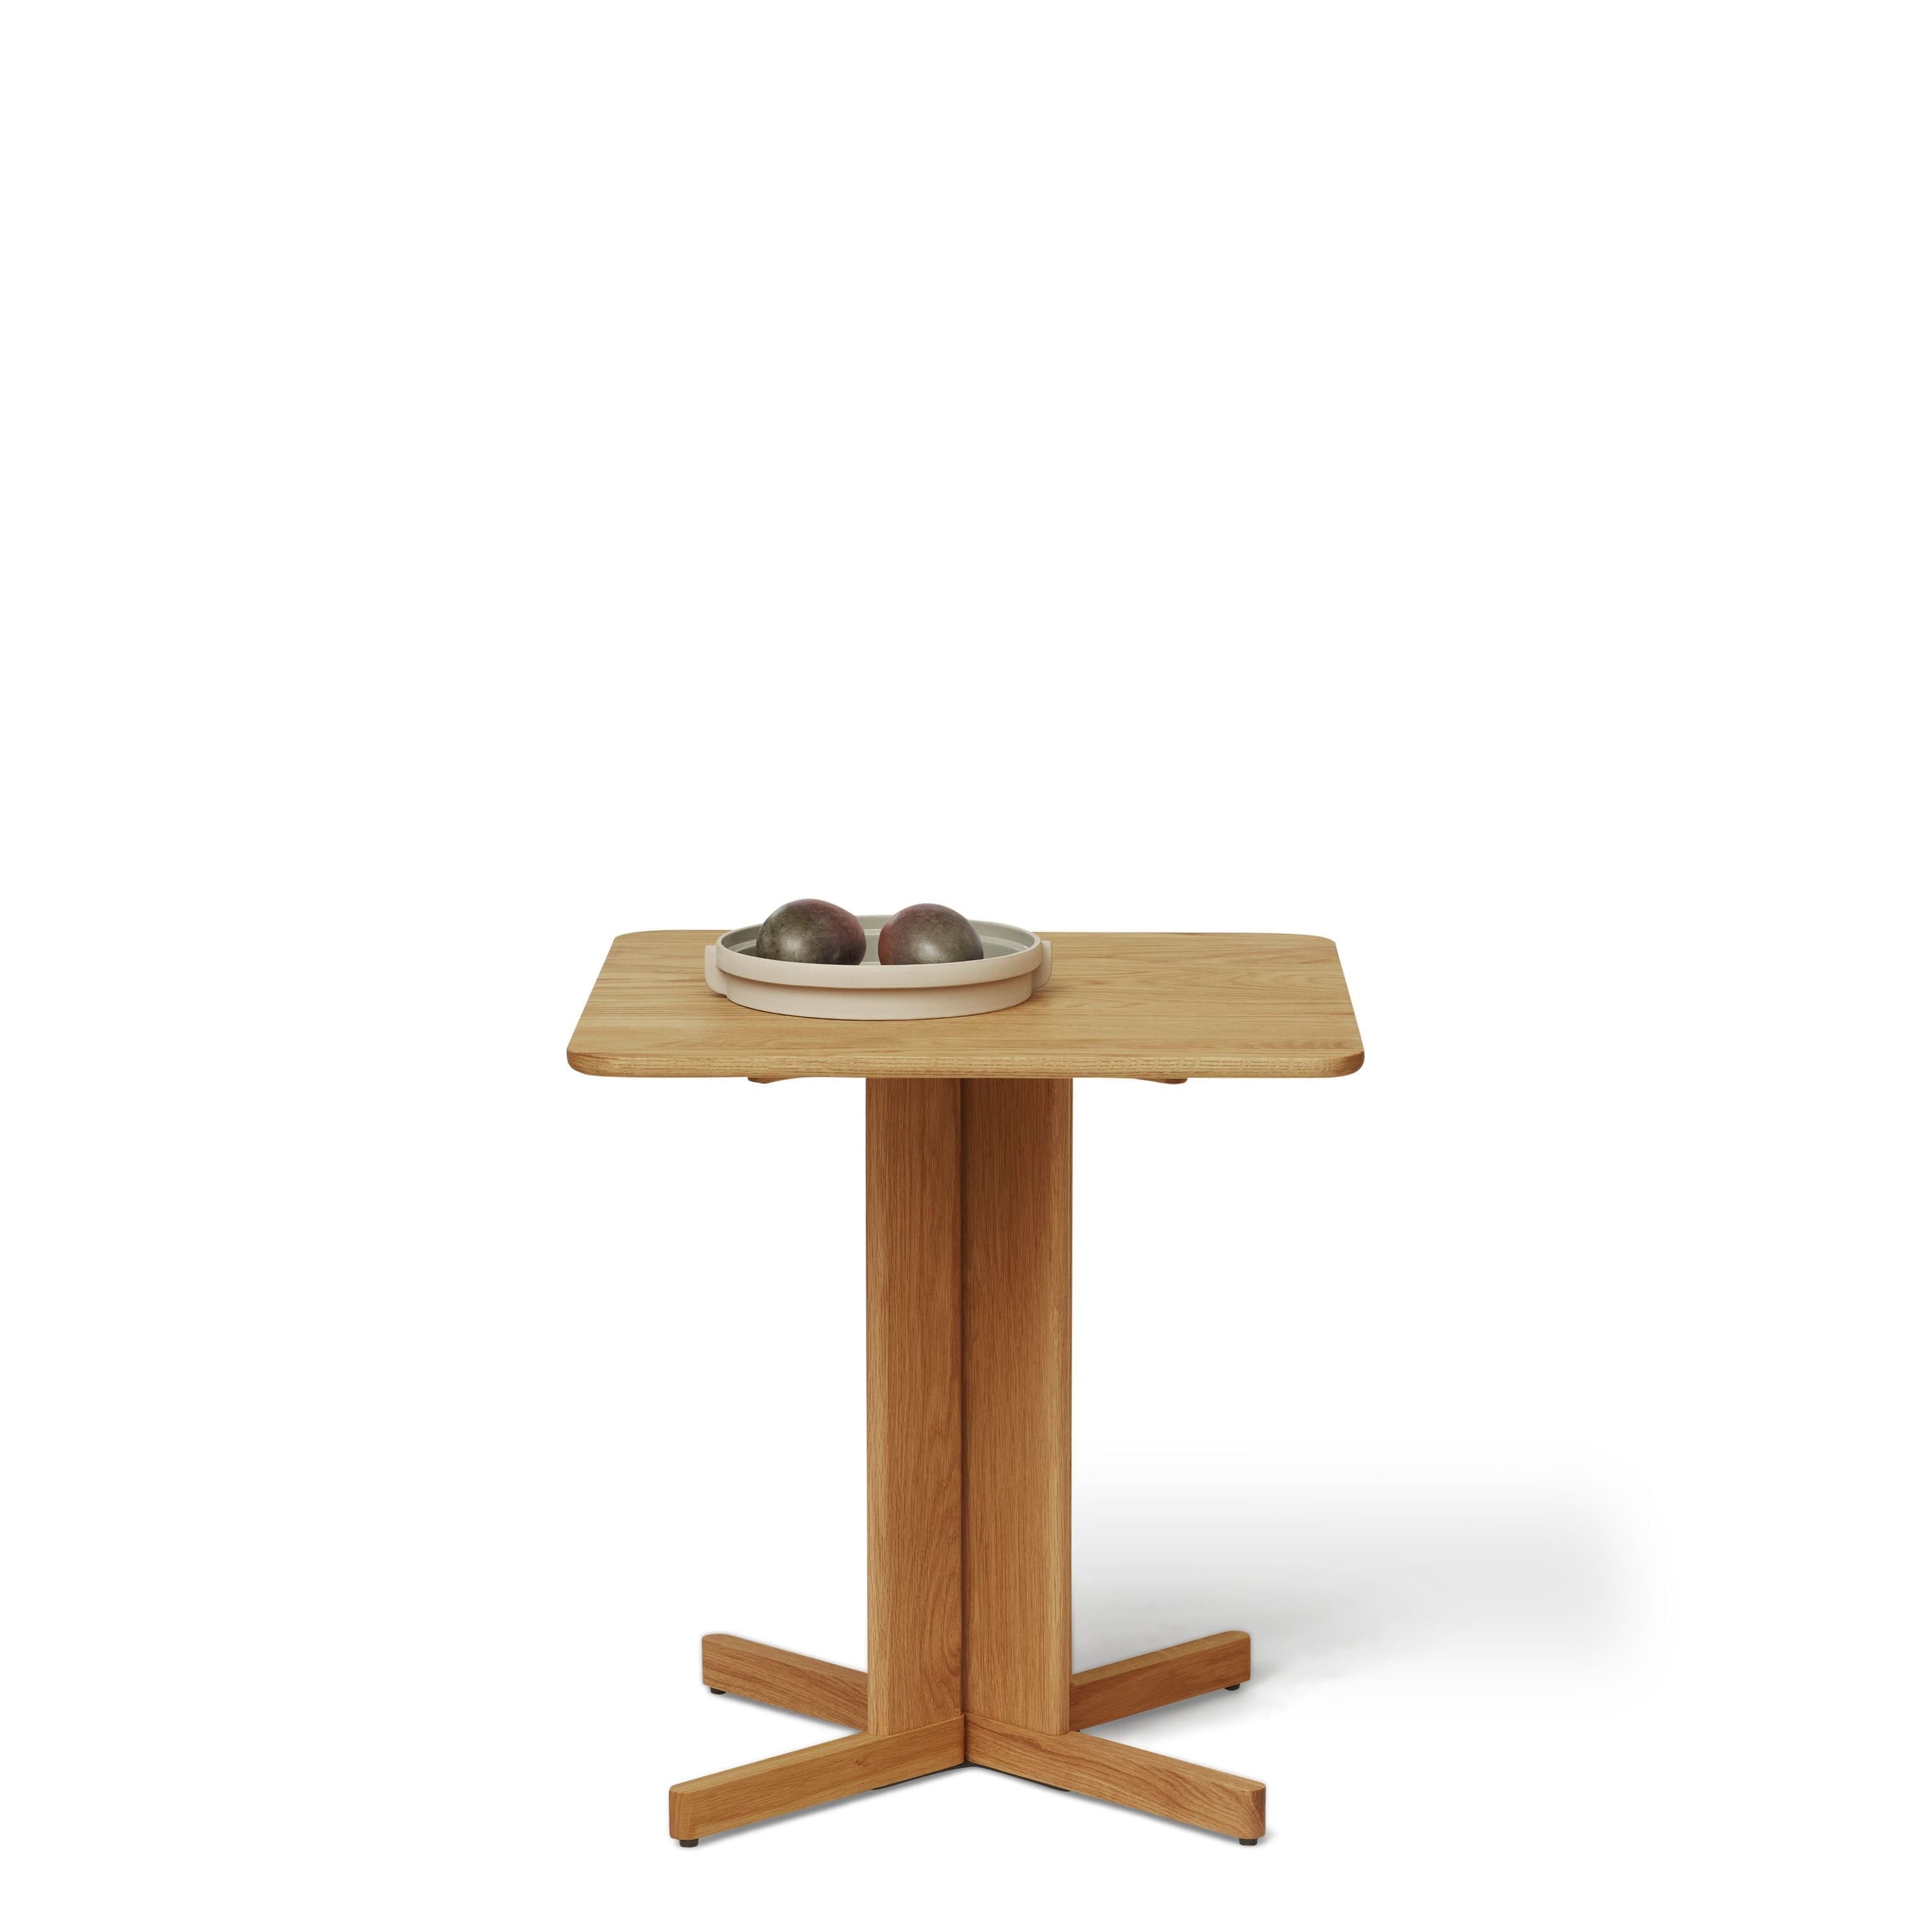 Form & Refine Quatrefoil Table 68x68 Cm. Oak